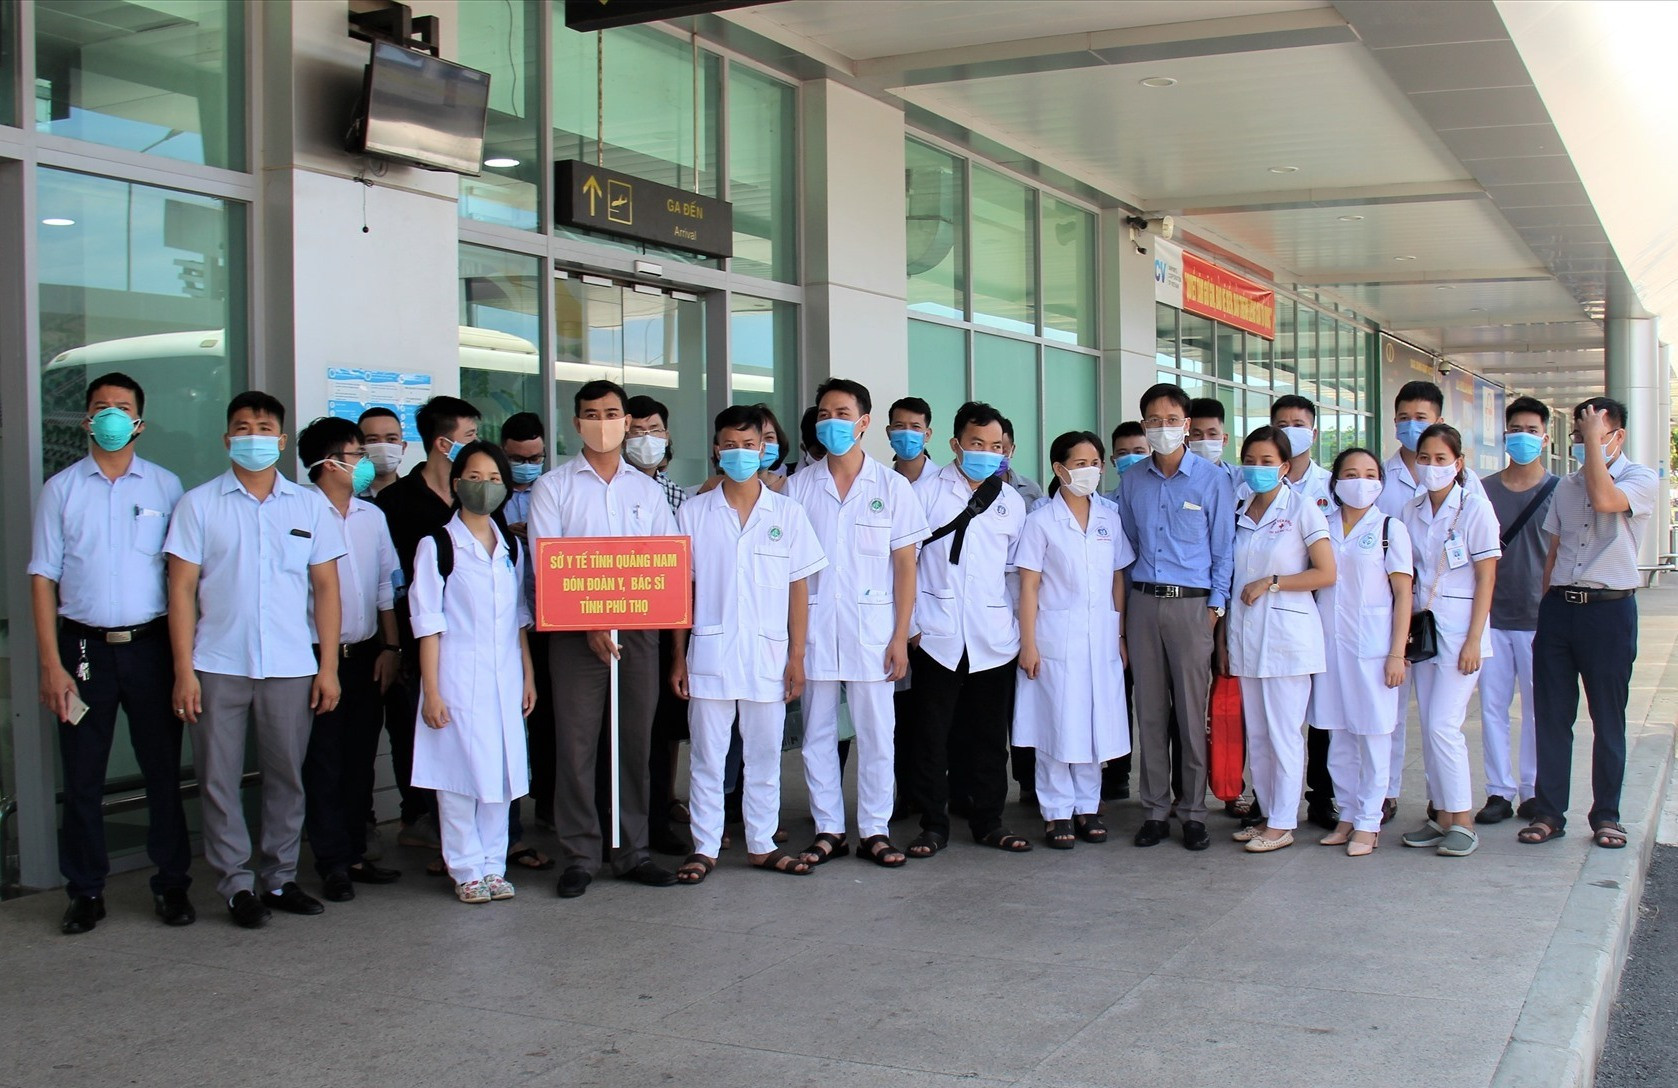 Đoàn y bác sĩ Phú Thọ tại sân bay Chu Lai trưa 8.8. Ảnh: THANH THẮNG